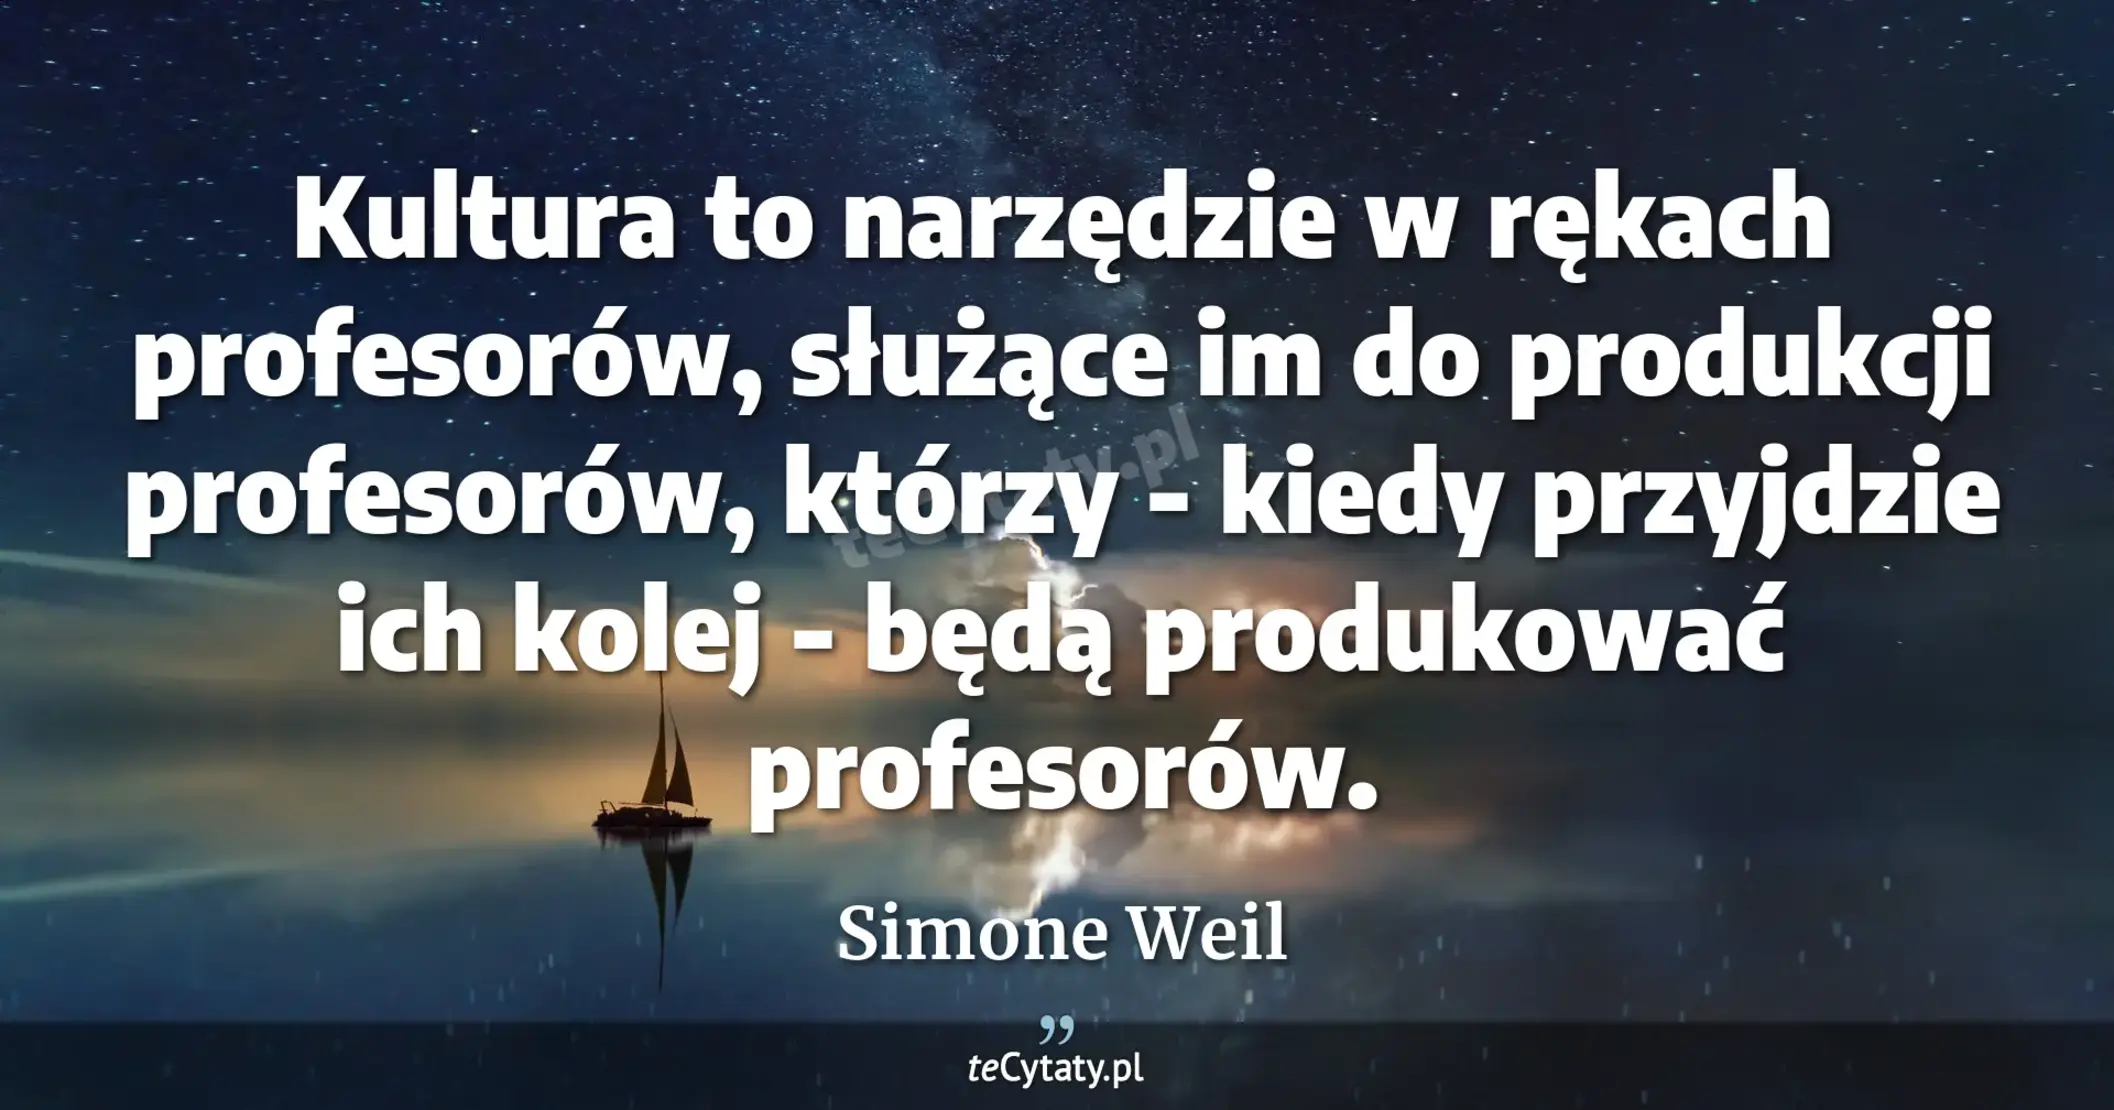 Kultura to narzędzie w rękach profesorów, służące im do produkcji profesorów, którzy - kiedy przyjdzie ich kolej - będą produkować profesorów. - Simone Weil